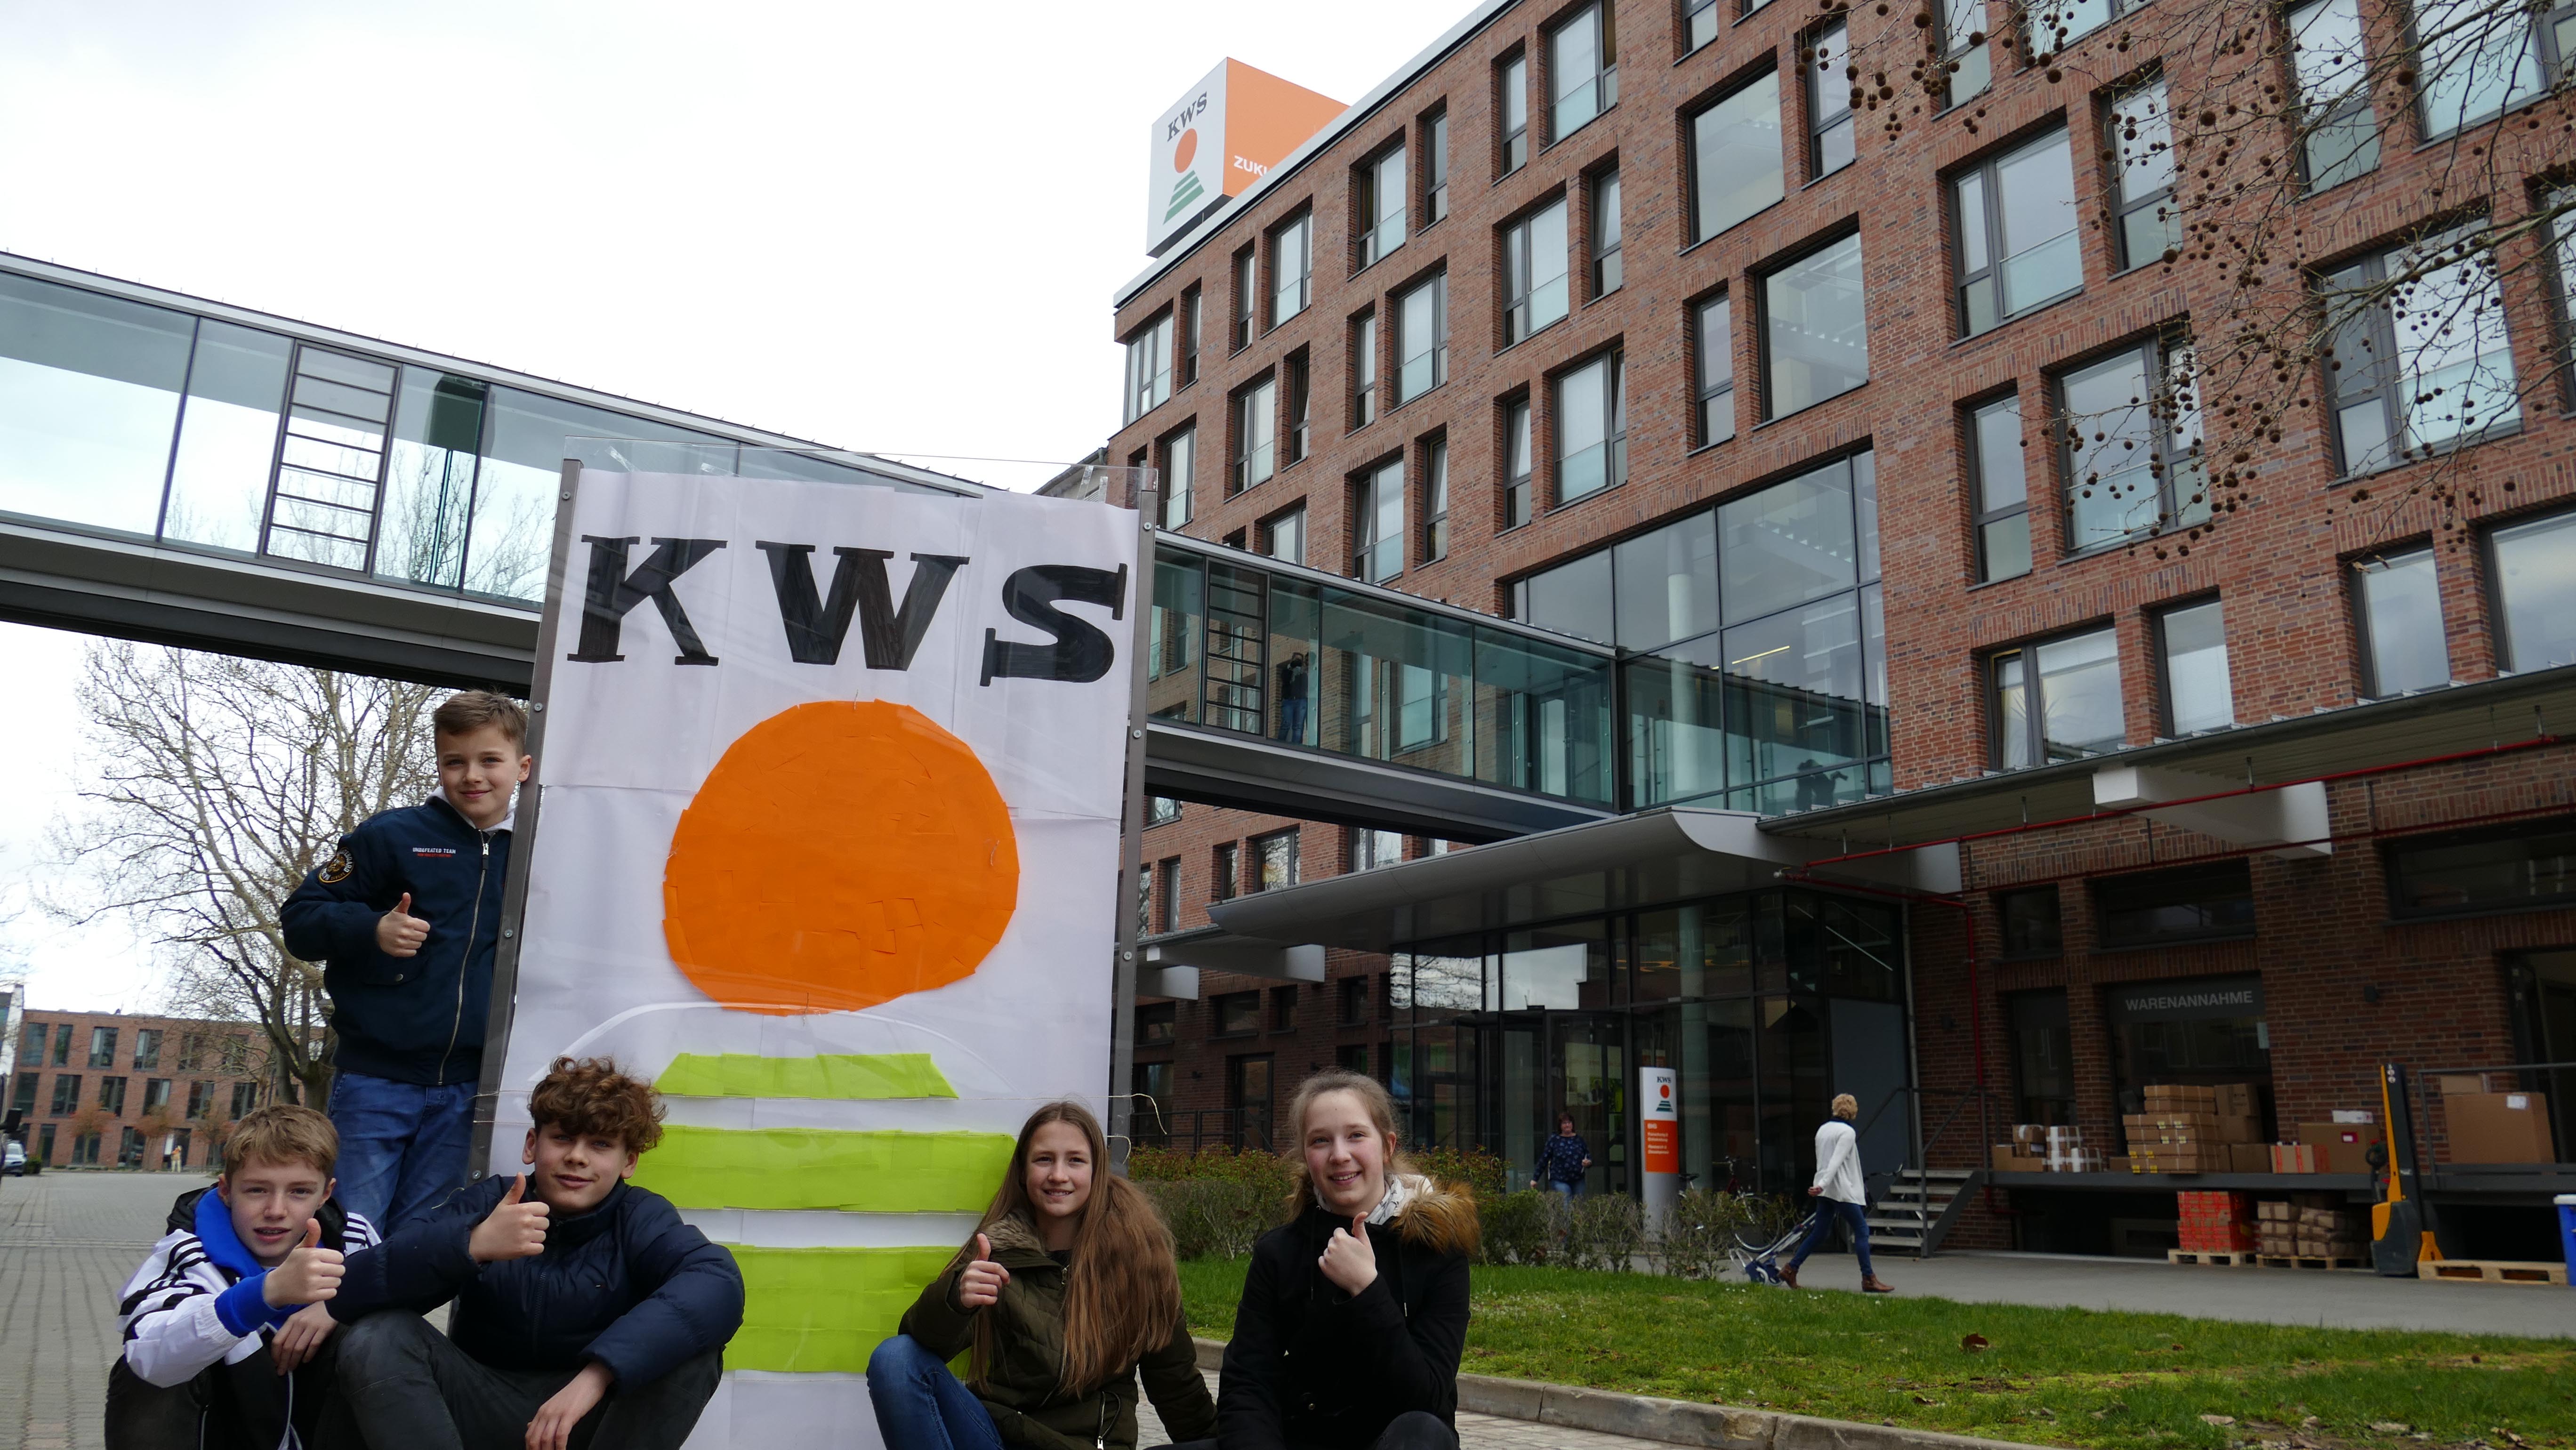 (v.l.): Tyler Alex, Tom Torke, Luis Pfalzgraf, Henja Laue und Leona Vollbrecht vor dem aus Post-its angefertigten KWS Logo, einer von vielen Aktionen beim Zukunftstag der KWS.